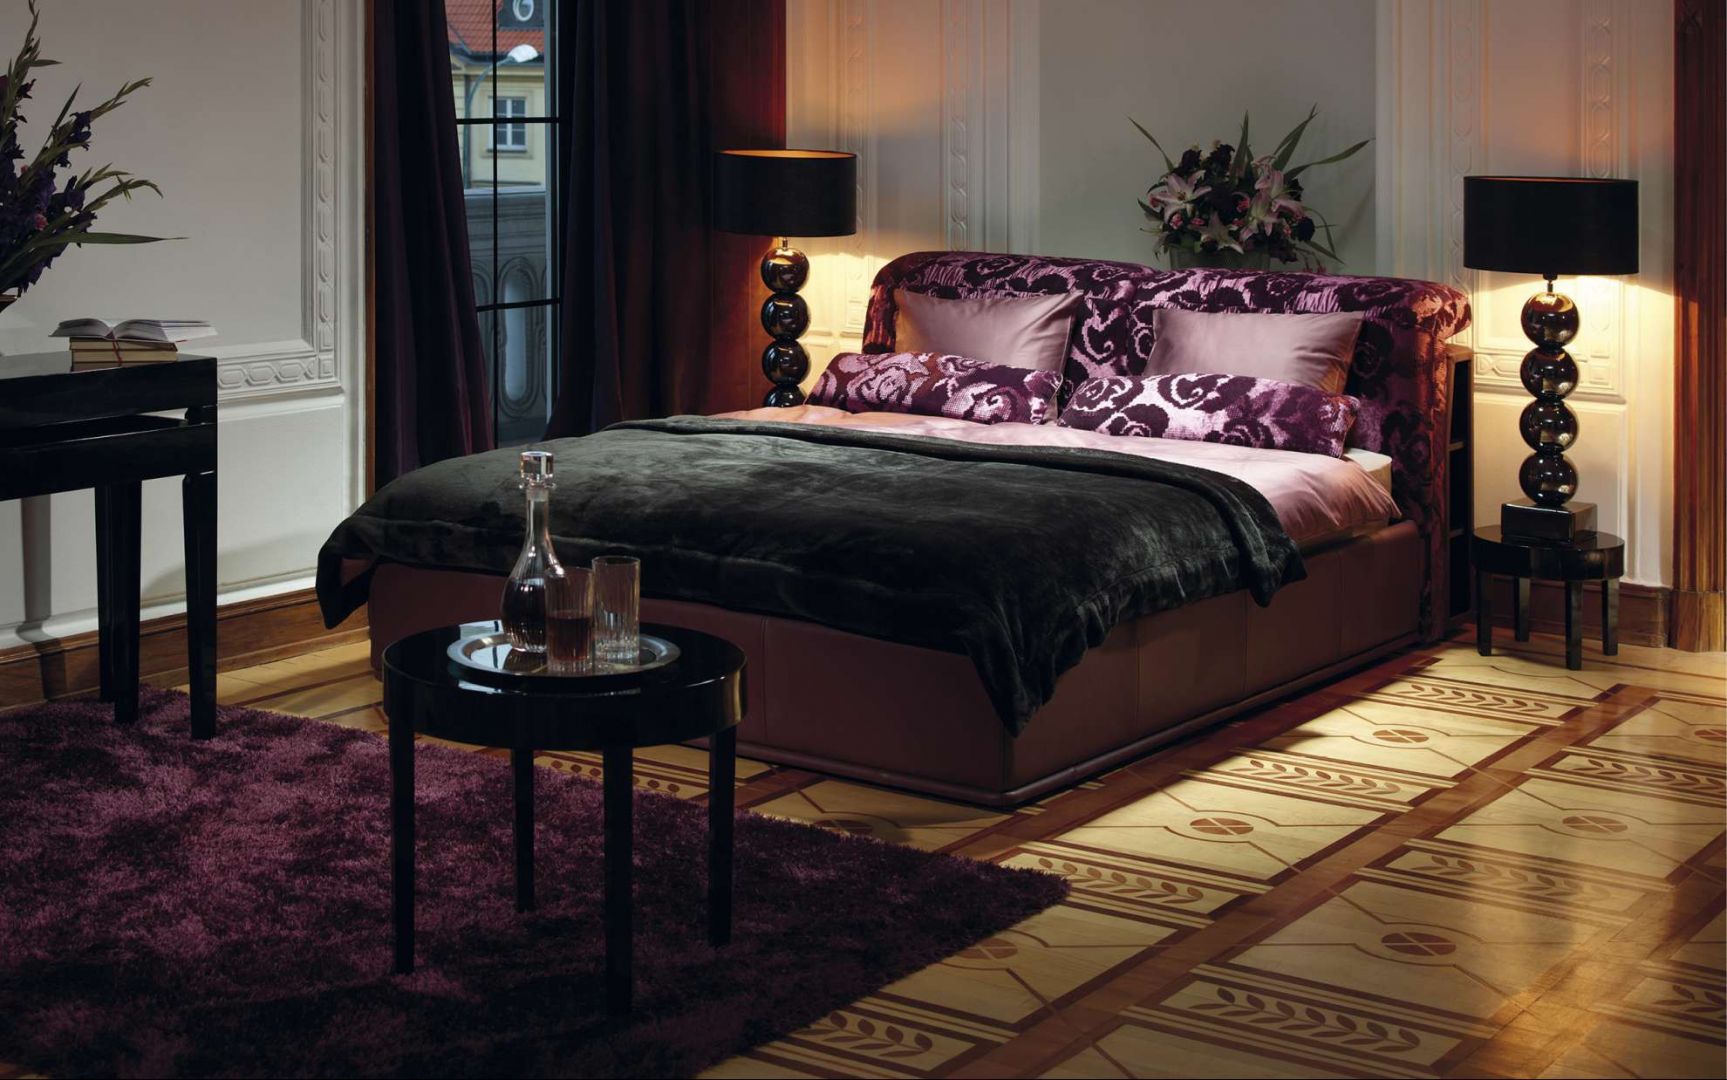 Rama łóżka z tapicerowanym wezgłowiem. Fot. Kler